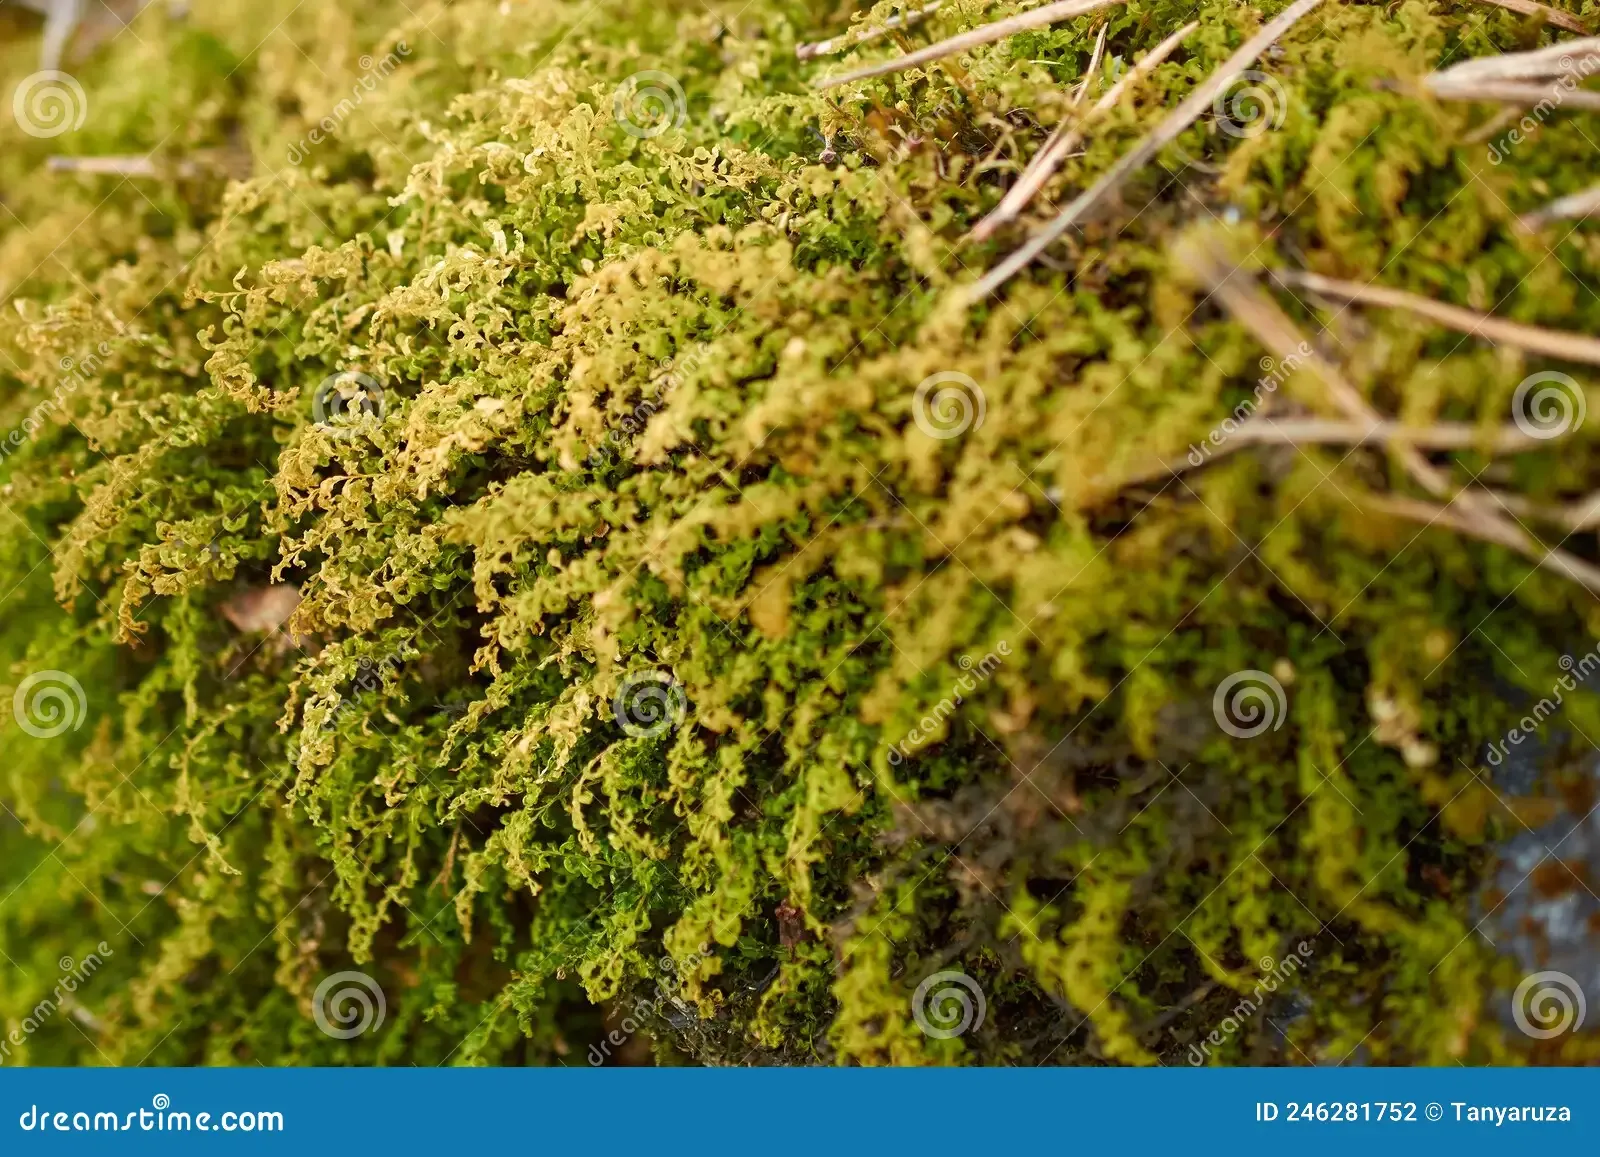 forest-floor-carpet-covered-green-moss-forest-floor-carpet-covered-green-moss-long-leaved-tail-moss-anomodon-longifolius-246281752.jpg